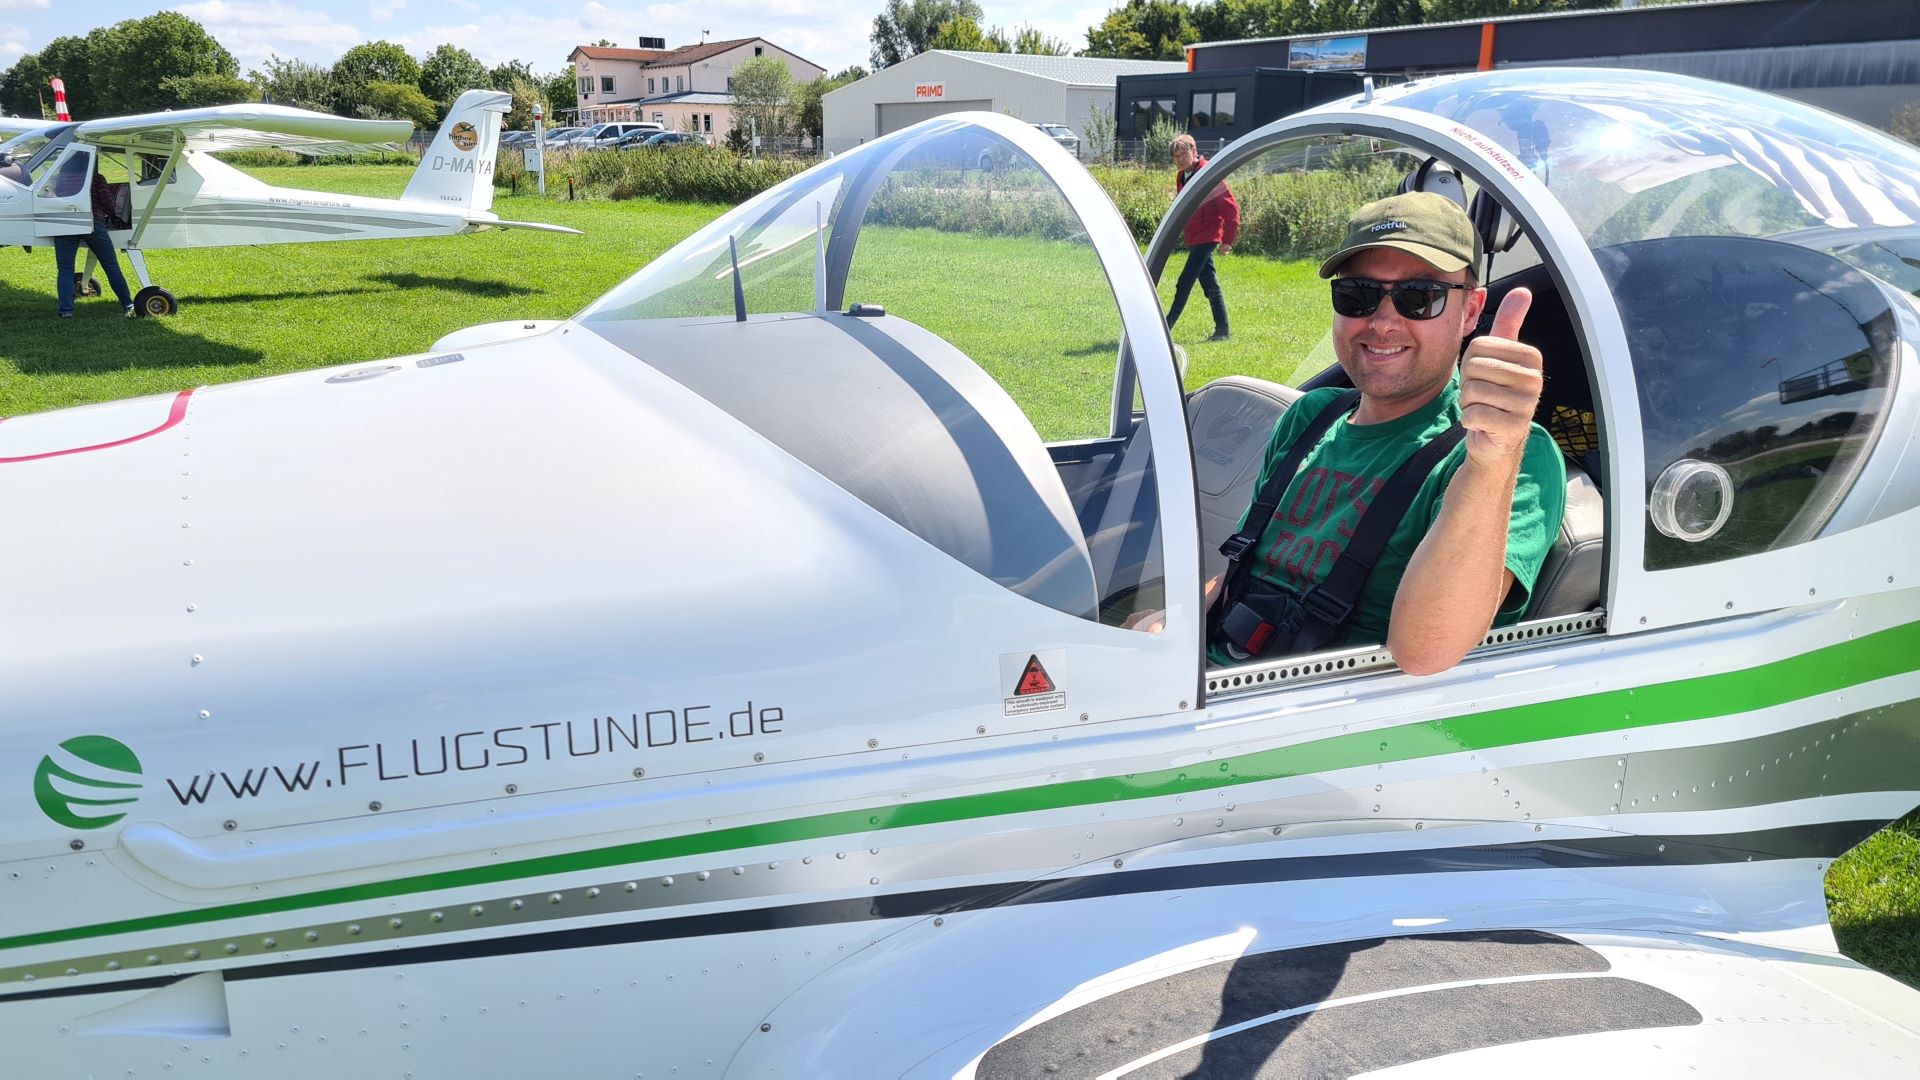 Flugstunde - Flugschüler Sönke im Cockpit der Breezer nach seinem ersten Soloflug